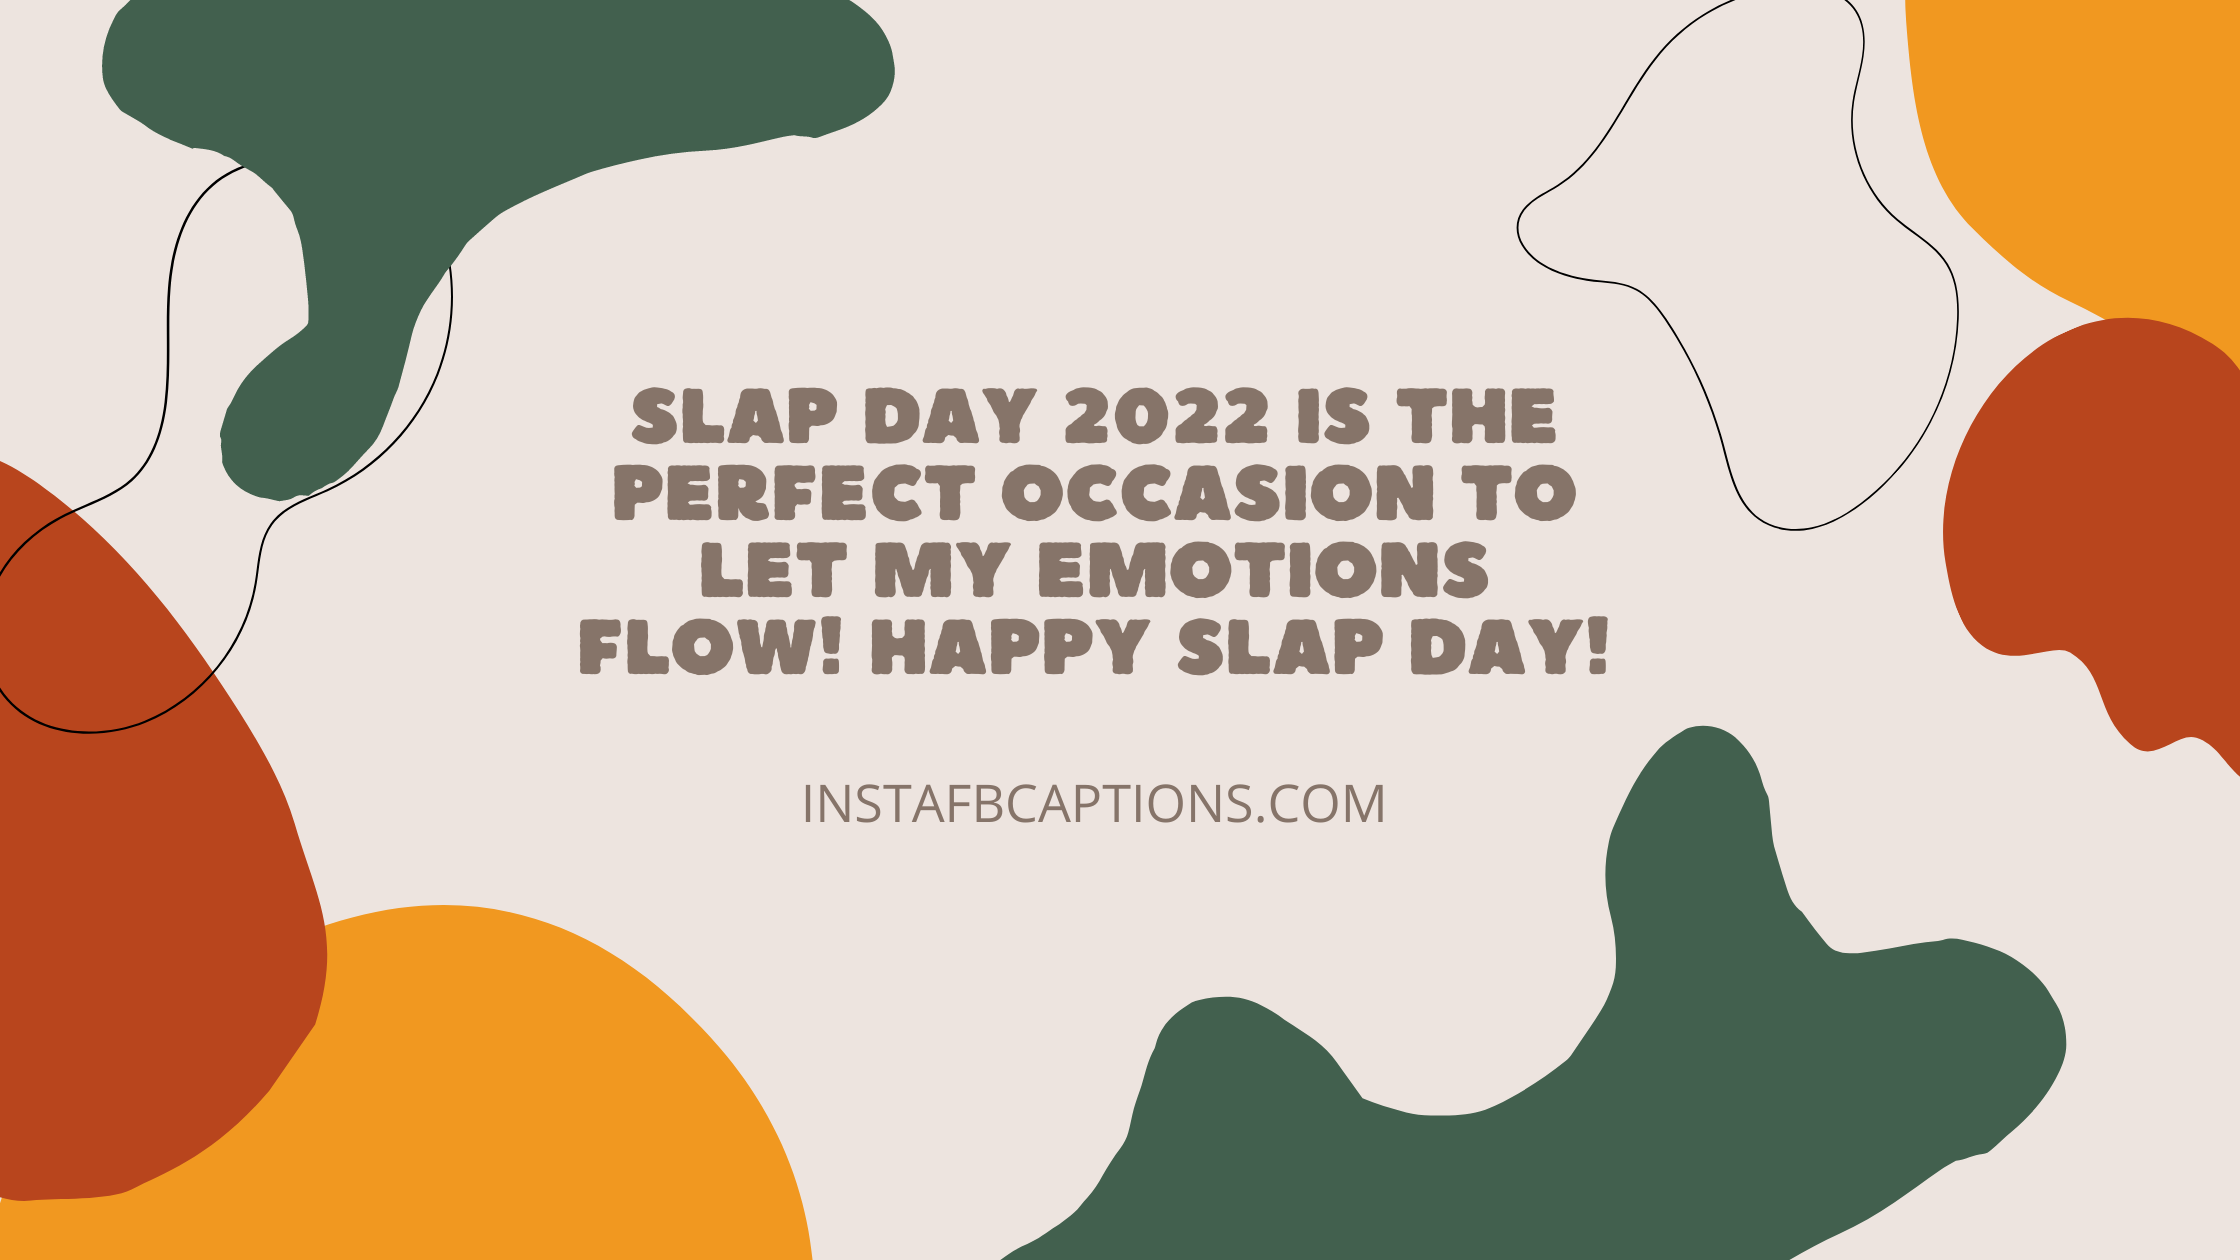 Instagram Captions For Slap Day 2022  - Instagram Captions for Slap Day 2022 - Happy Slap Day Instagram Captions for 15 Feb in 2022